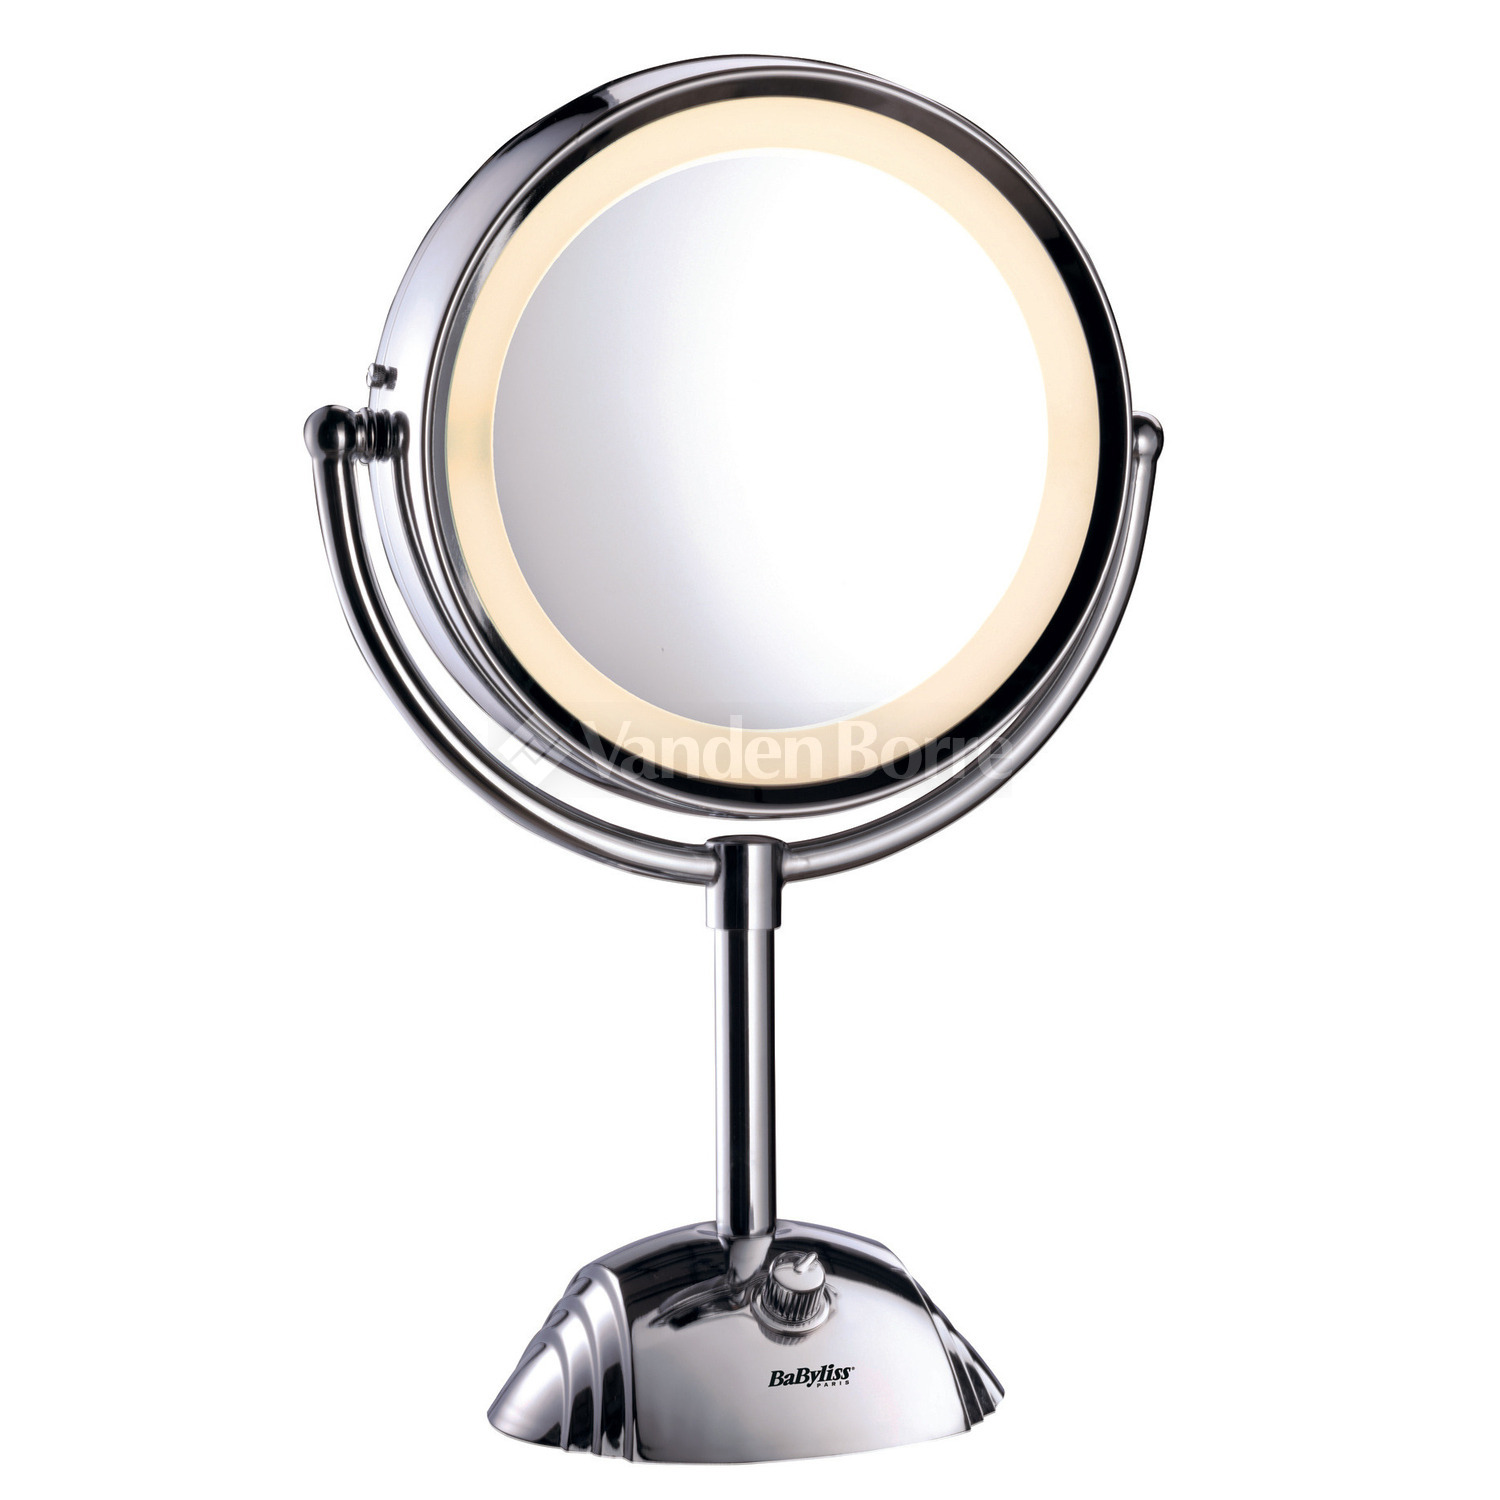 Dageraad Nederigheid Tekstschrijver Make-up spiegel kopen - Vanden Borre